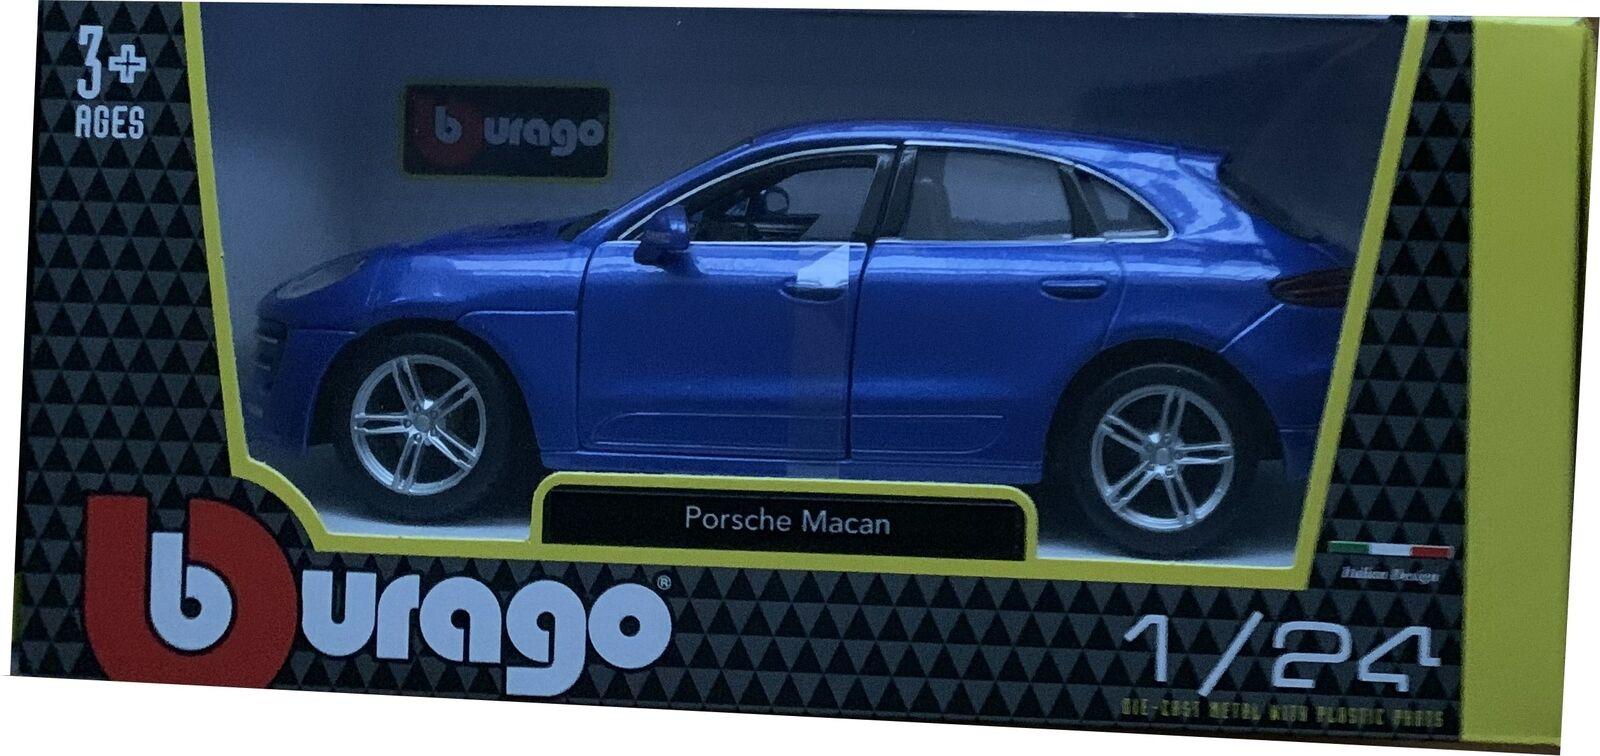 Porsche Macan in metallic blue 1:24 scale model from Bburago